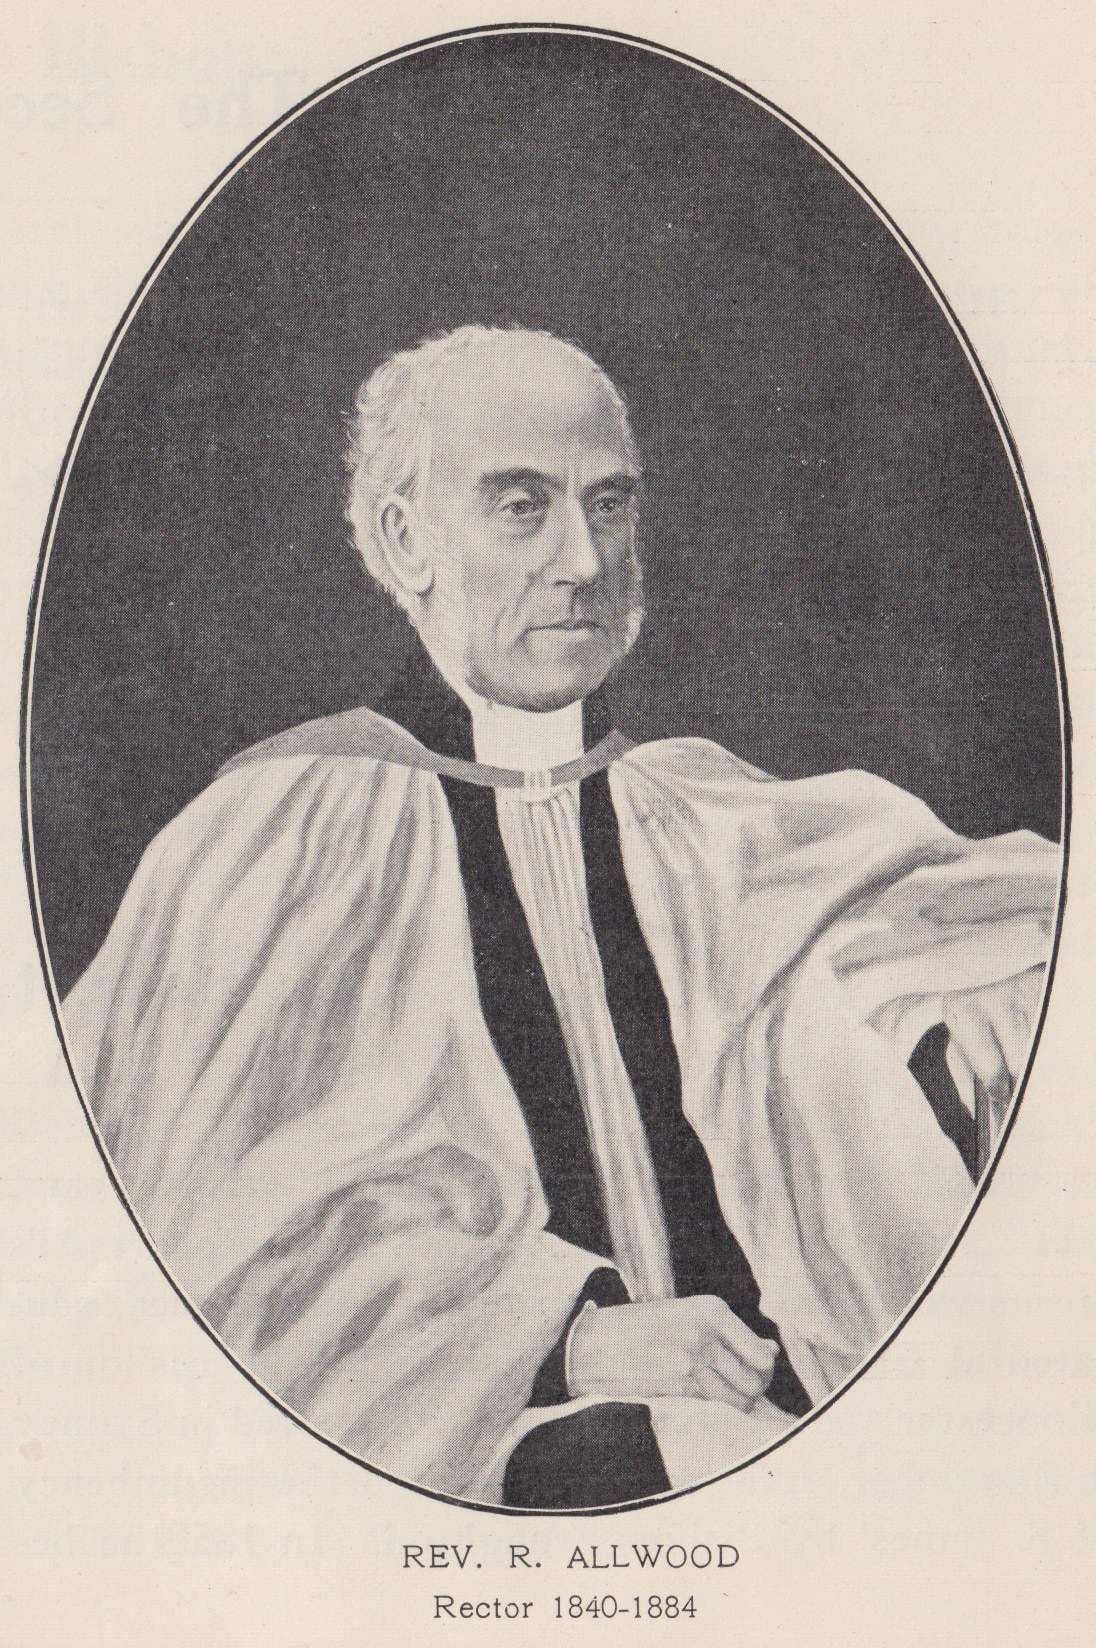 Historical illustration of Reverend Robert Allwood of St James' Chruch, Sydney